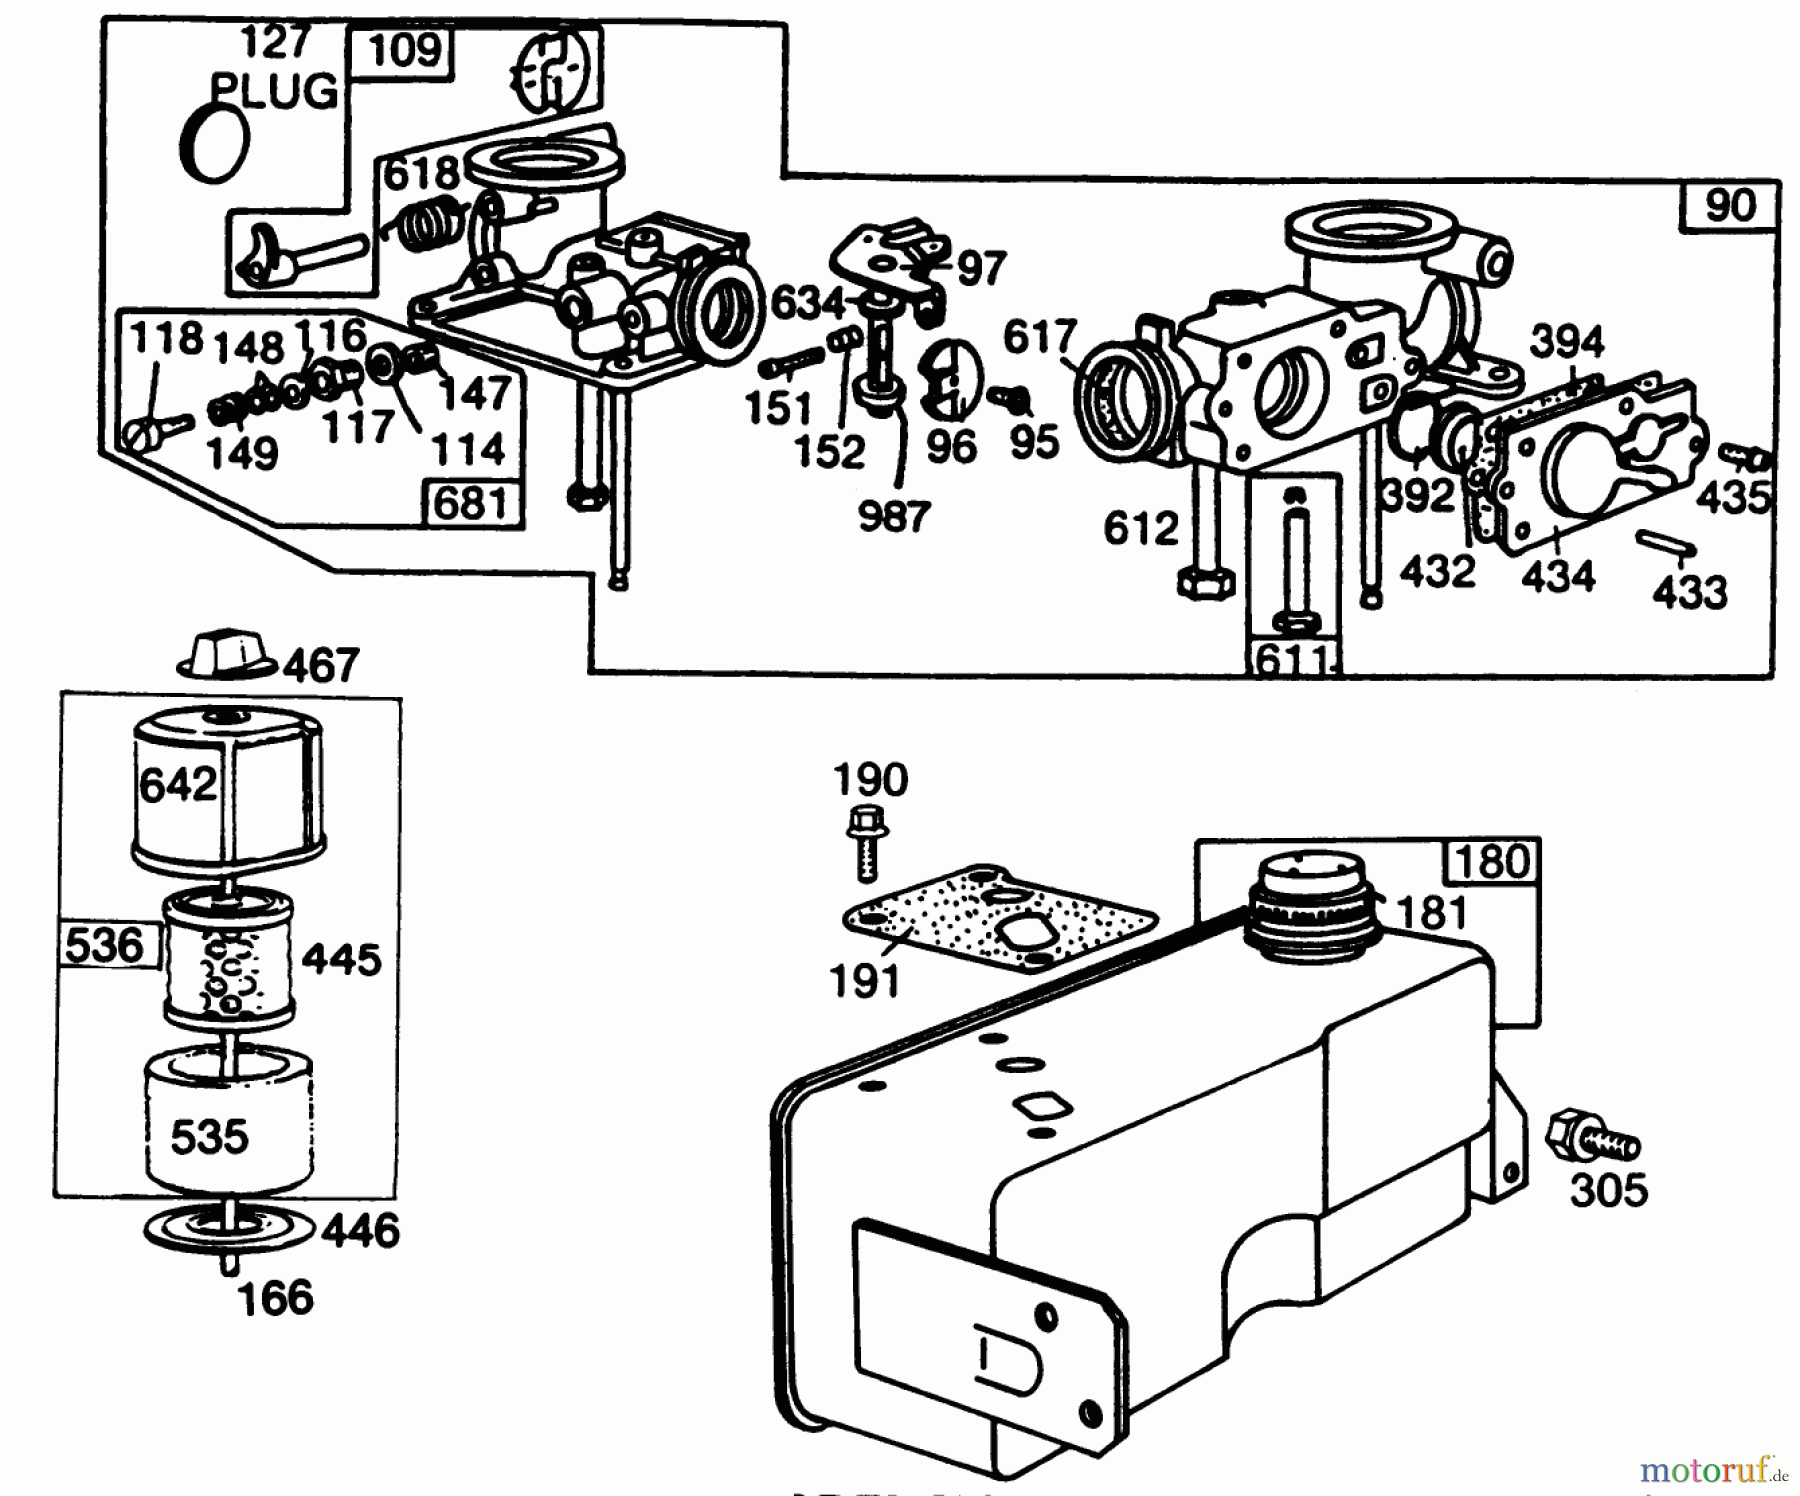  Toro Neu Mowers, Walk-Behind Seite 2 22005 - Toro Lawnmower, 1989 (9000001-9999999) ENGINE BRIGGS & STRATTON MODEL NO. 130902 TYPE 1200-01 #3